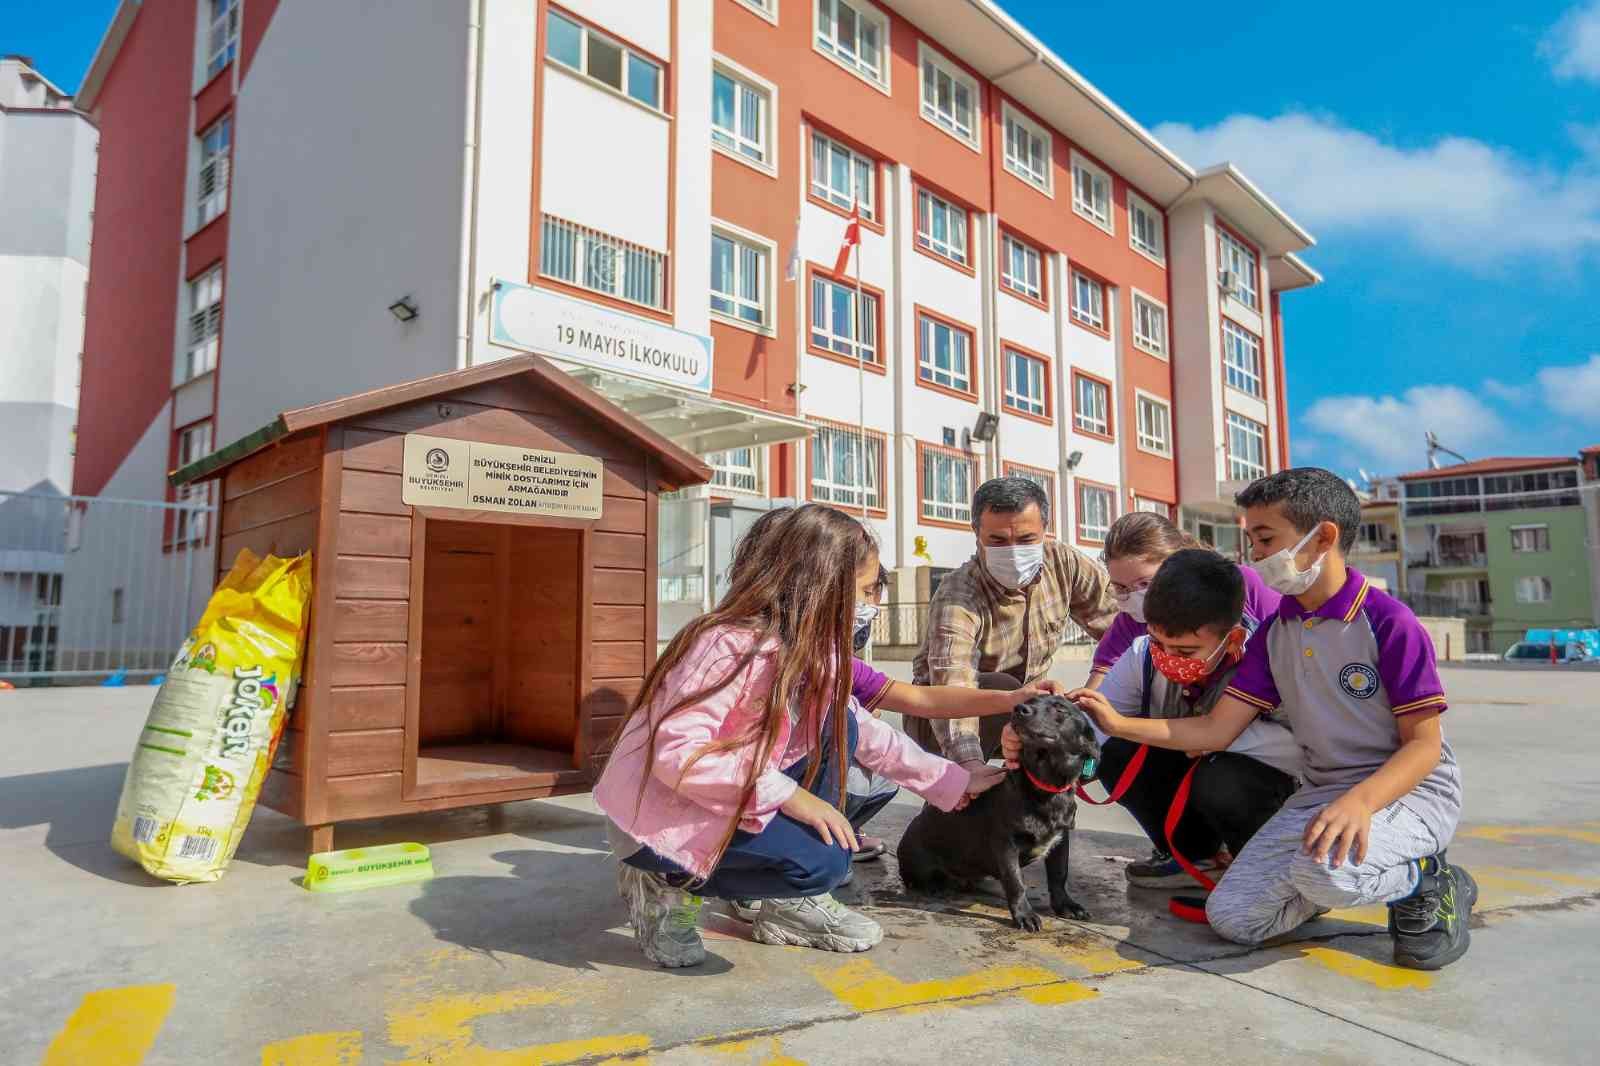 Her okula bir sokak köpeği projesi 25 okula ulaştı #denizli